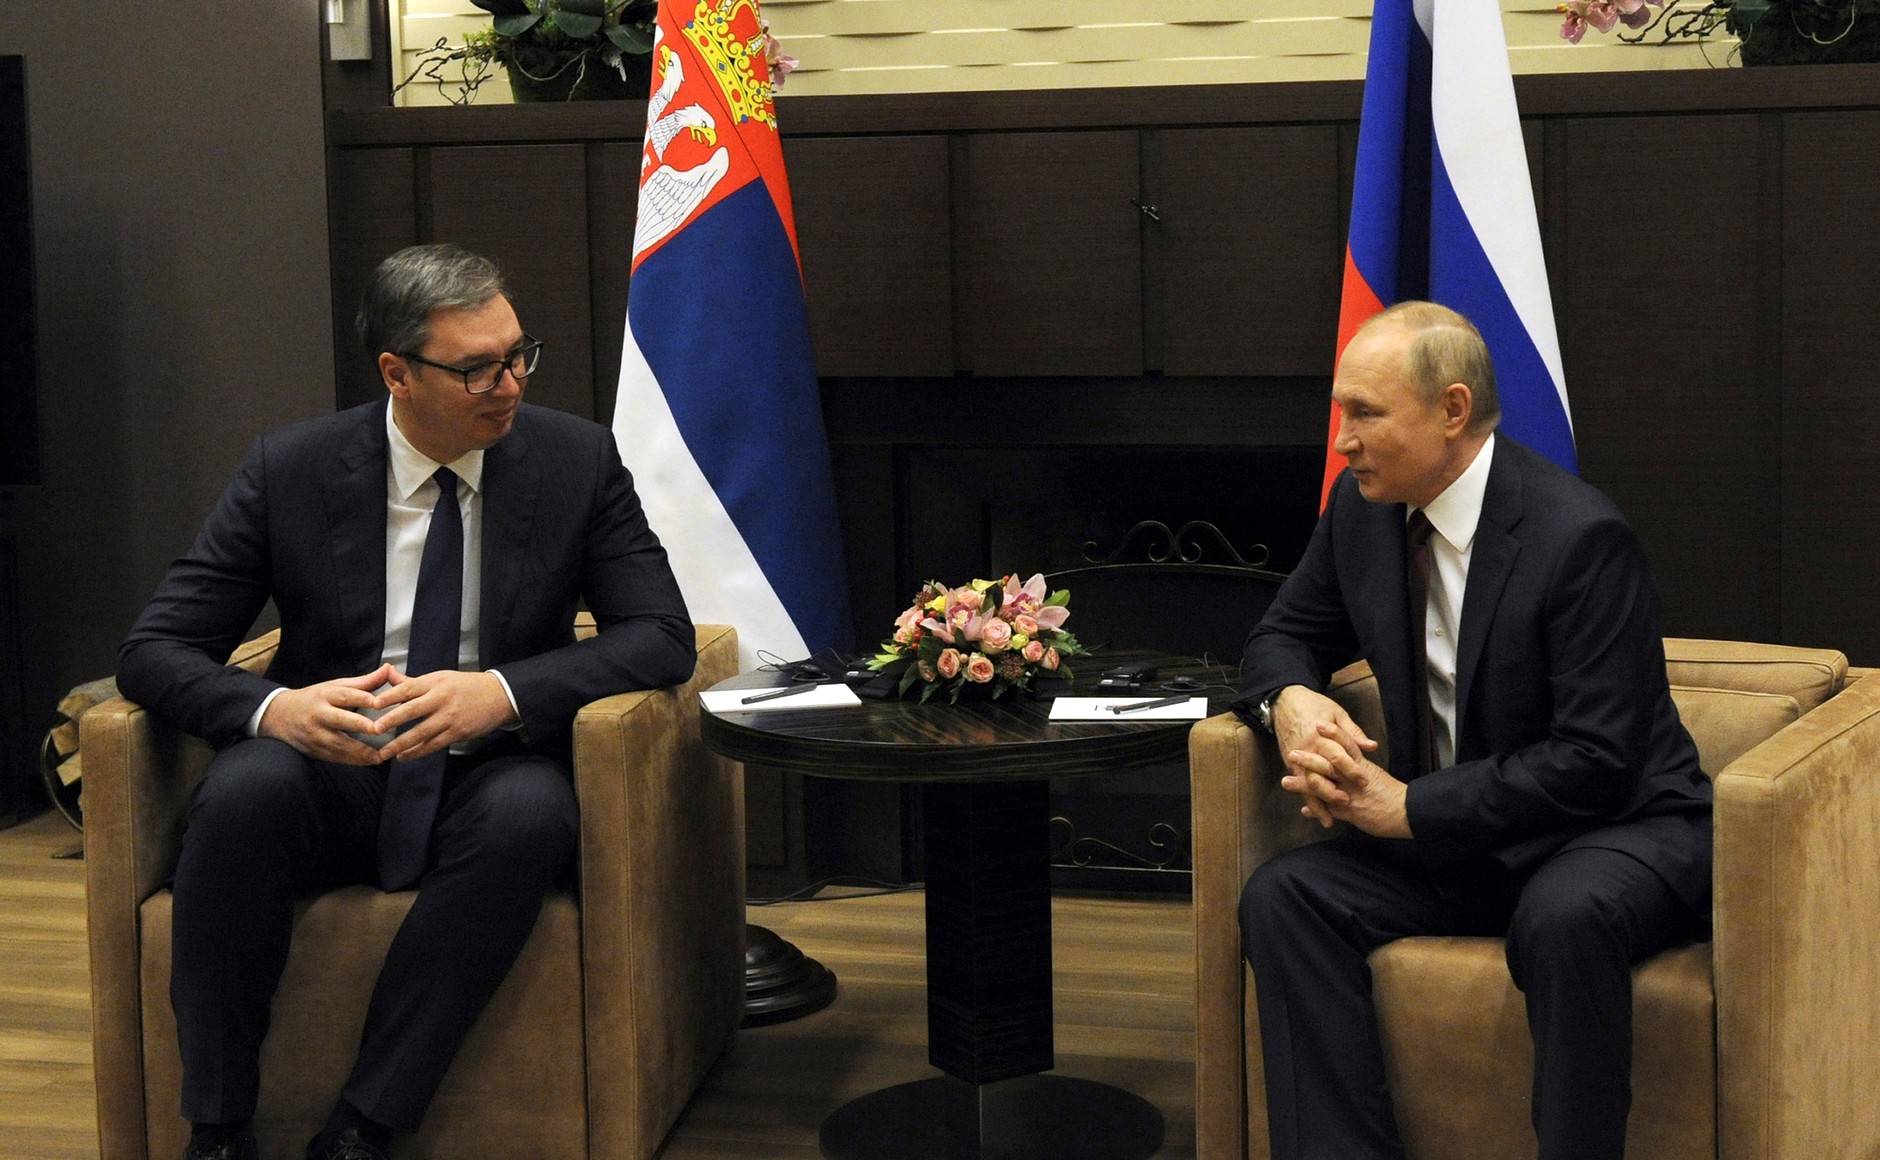 Vučić nakon susreta s Putinom: "Osigurali smo plin po iznimno povoljnoj cijeni, a bili smo u krizi, počeli smo trošiti rezerve, imali smo samo za 15 dana... Putin nas je spasio!"